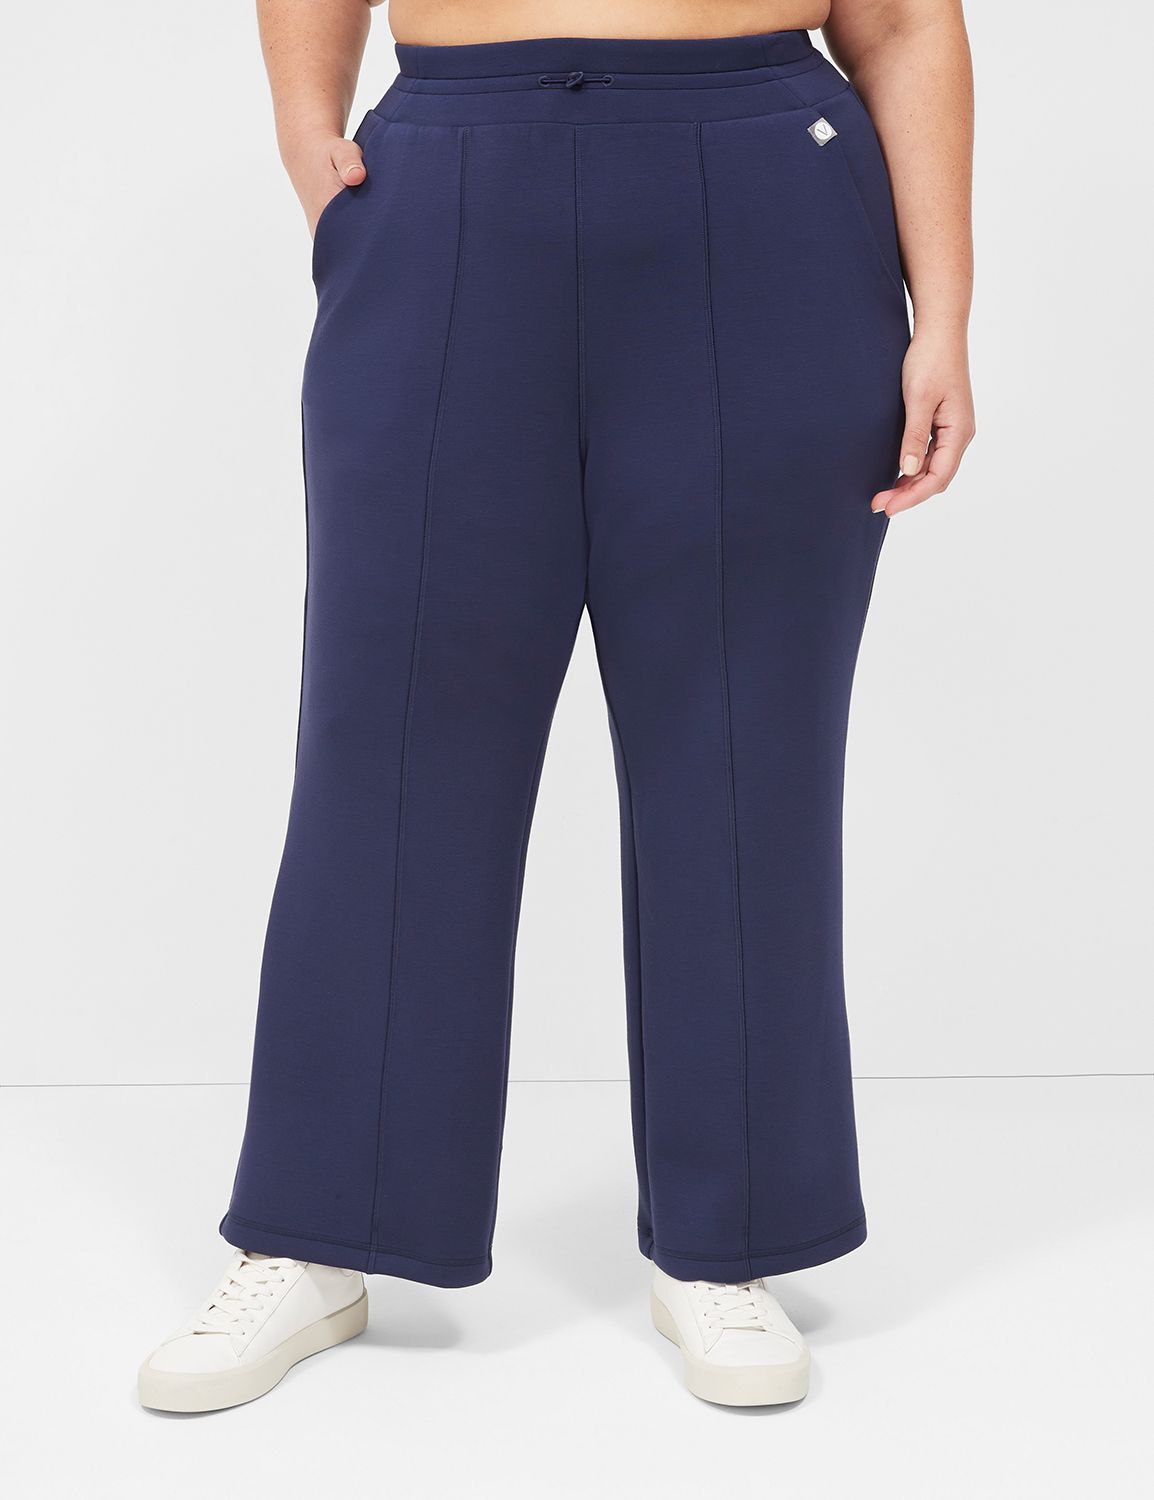 Plain Flare Leg Navy Blue Plus Size Sweatpants (Women's) 